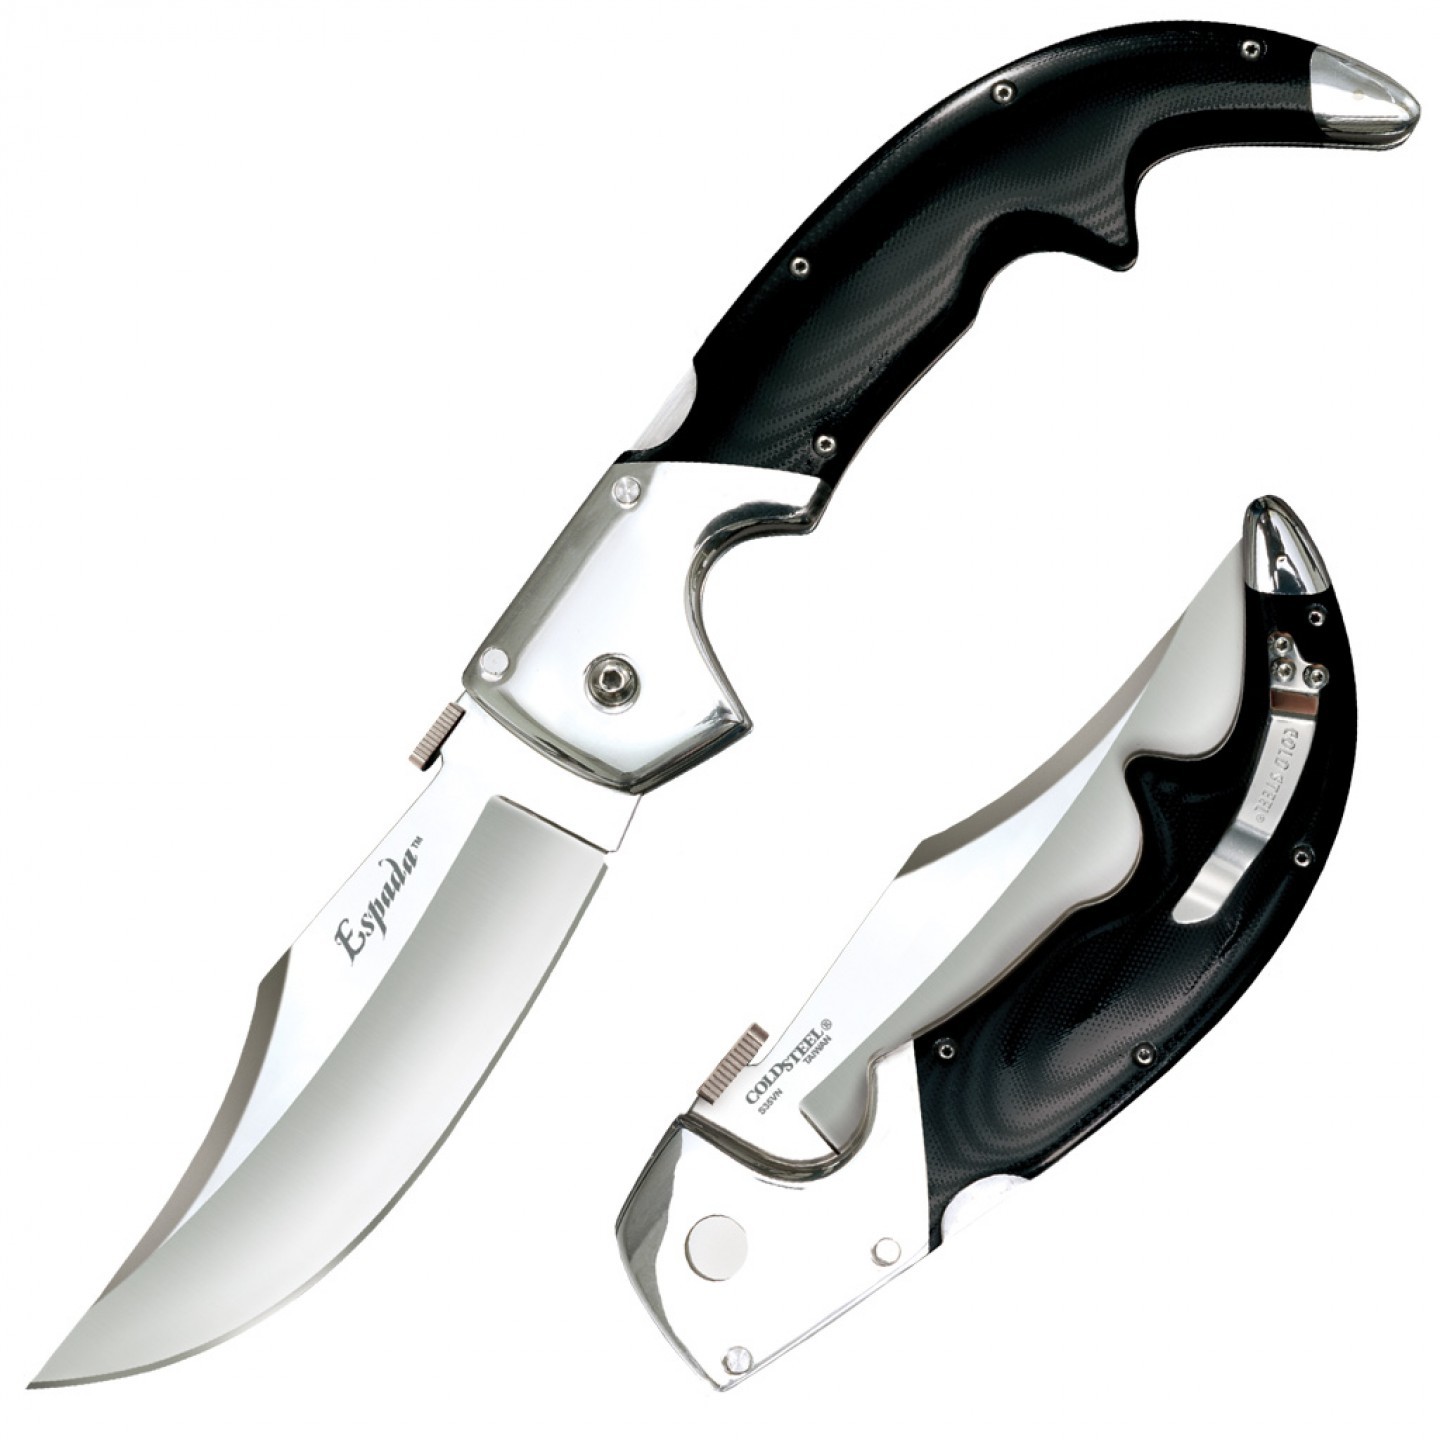 Складной нож Espada (Large) - Cold Steel 62MB, сталь CPM-S35VN, рукоять G10/Анодированный алюминий складной туристический нож firebird